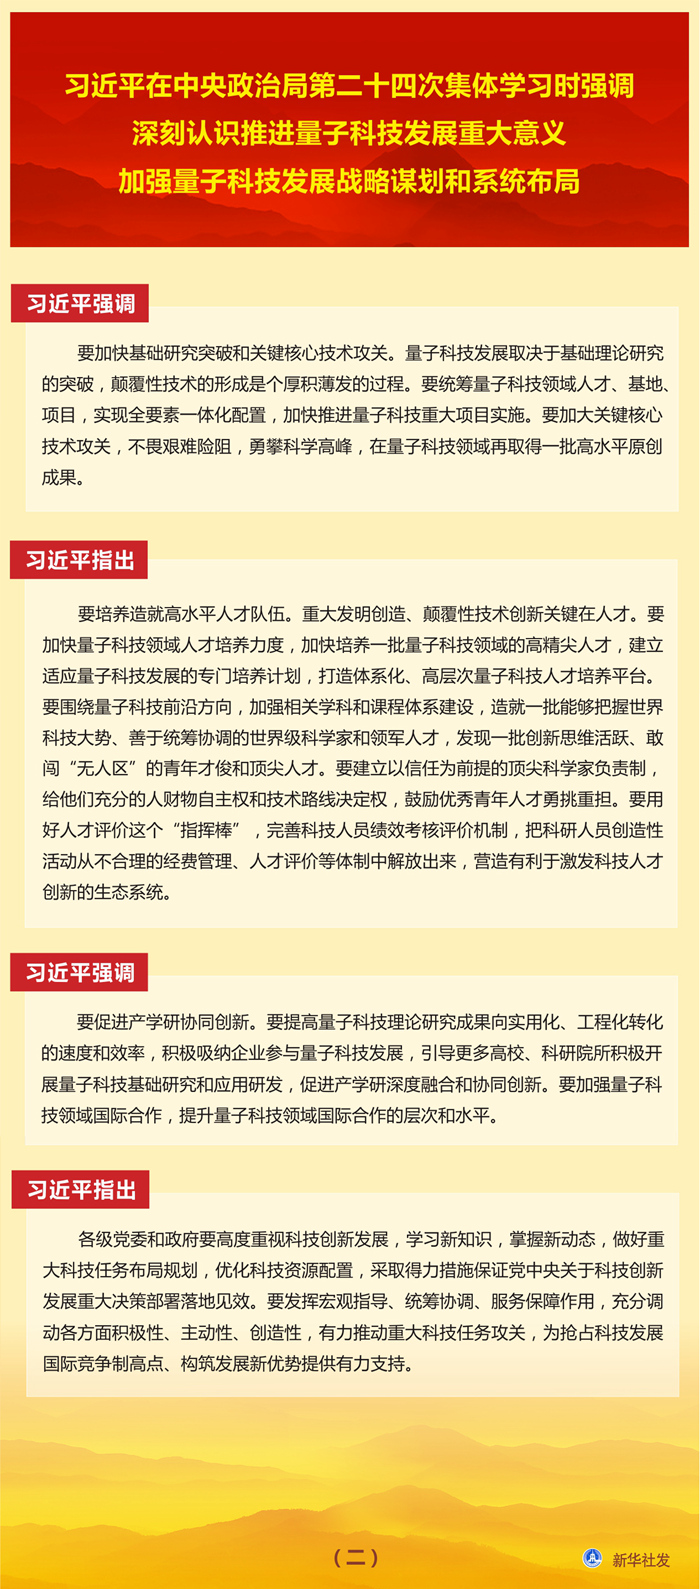 习近平在中央政治局第二十四次集体学习时强调